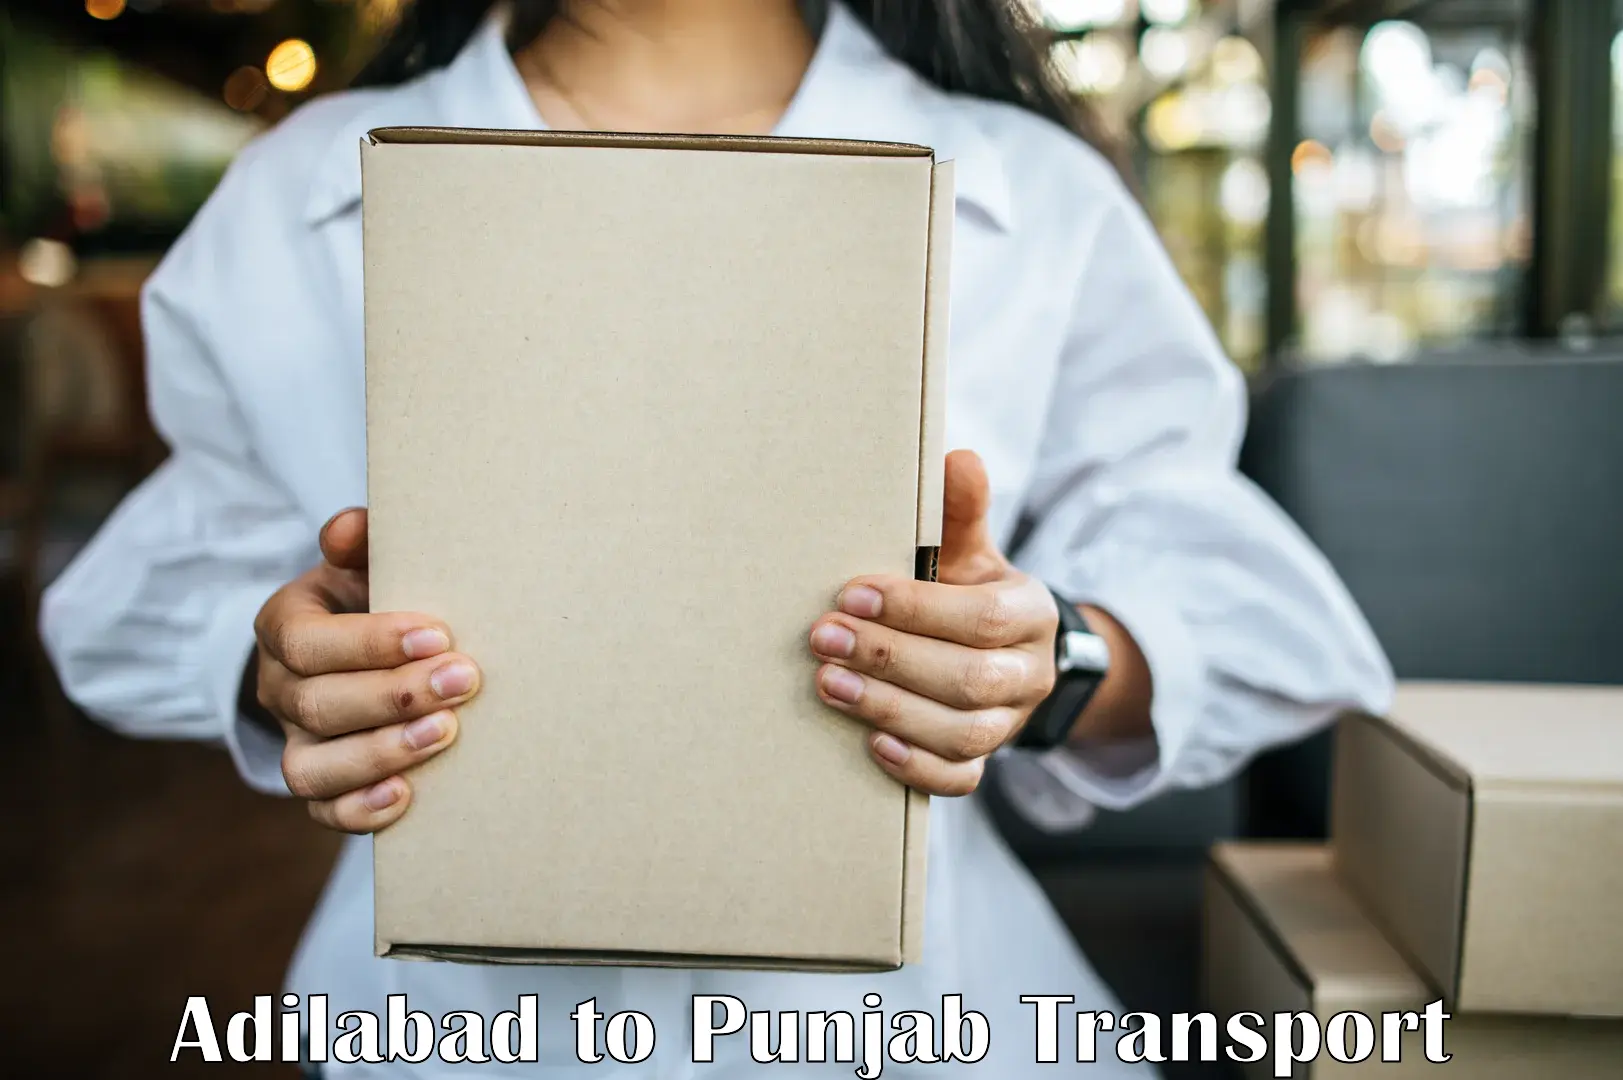 Commercial transport service Adilabad to Rupnagar